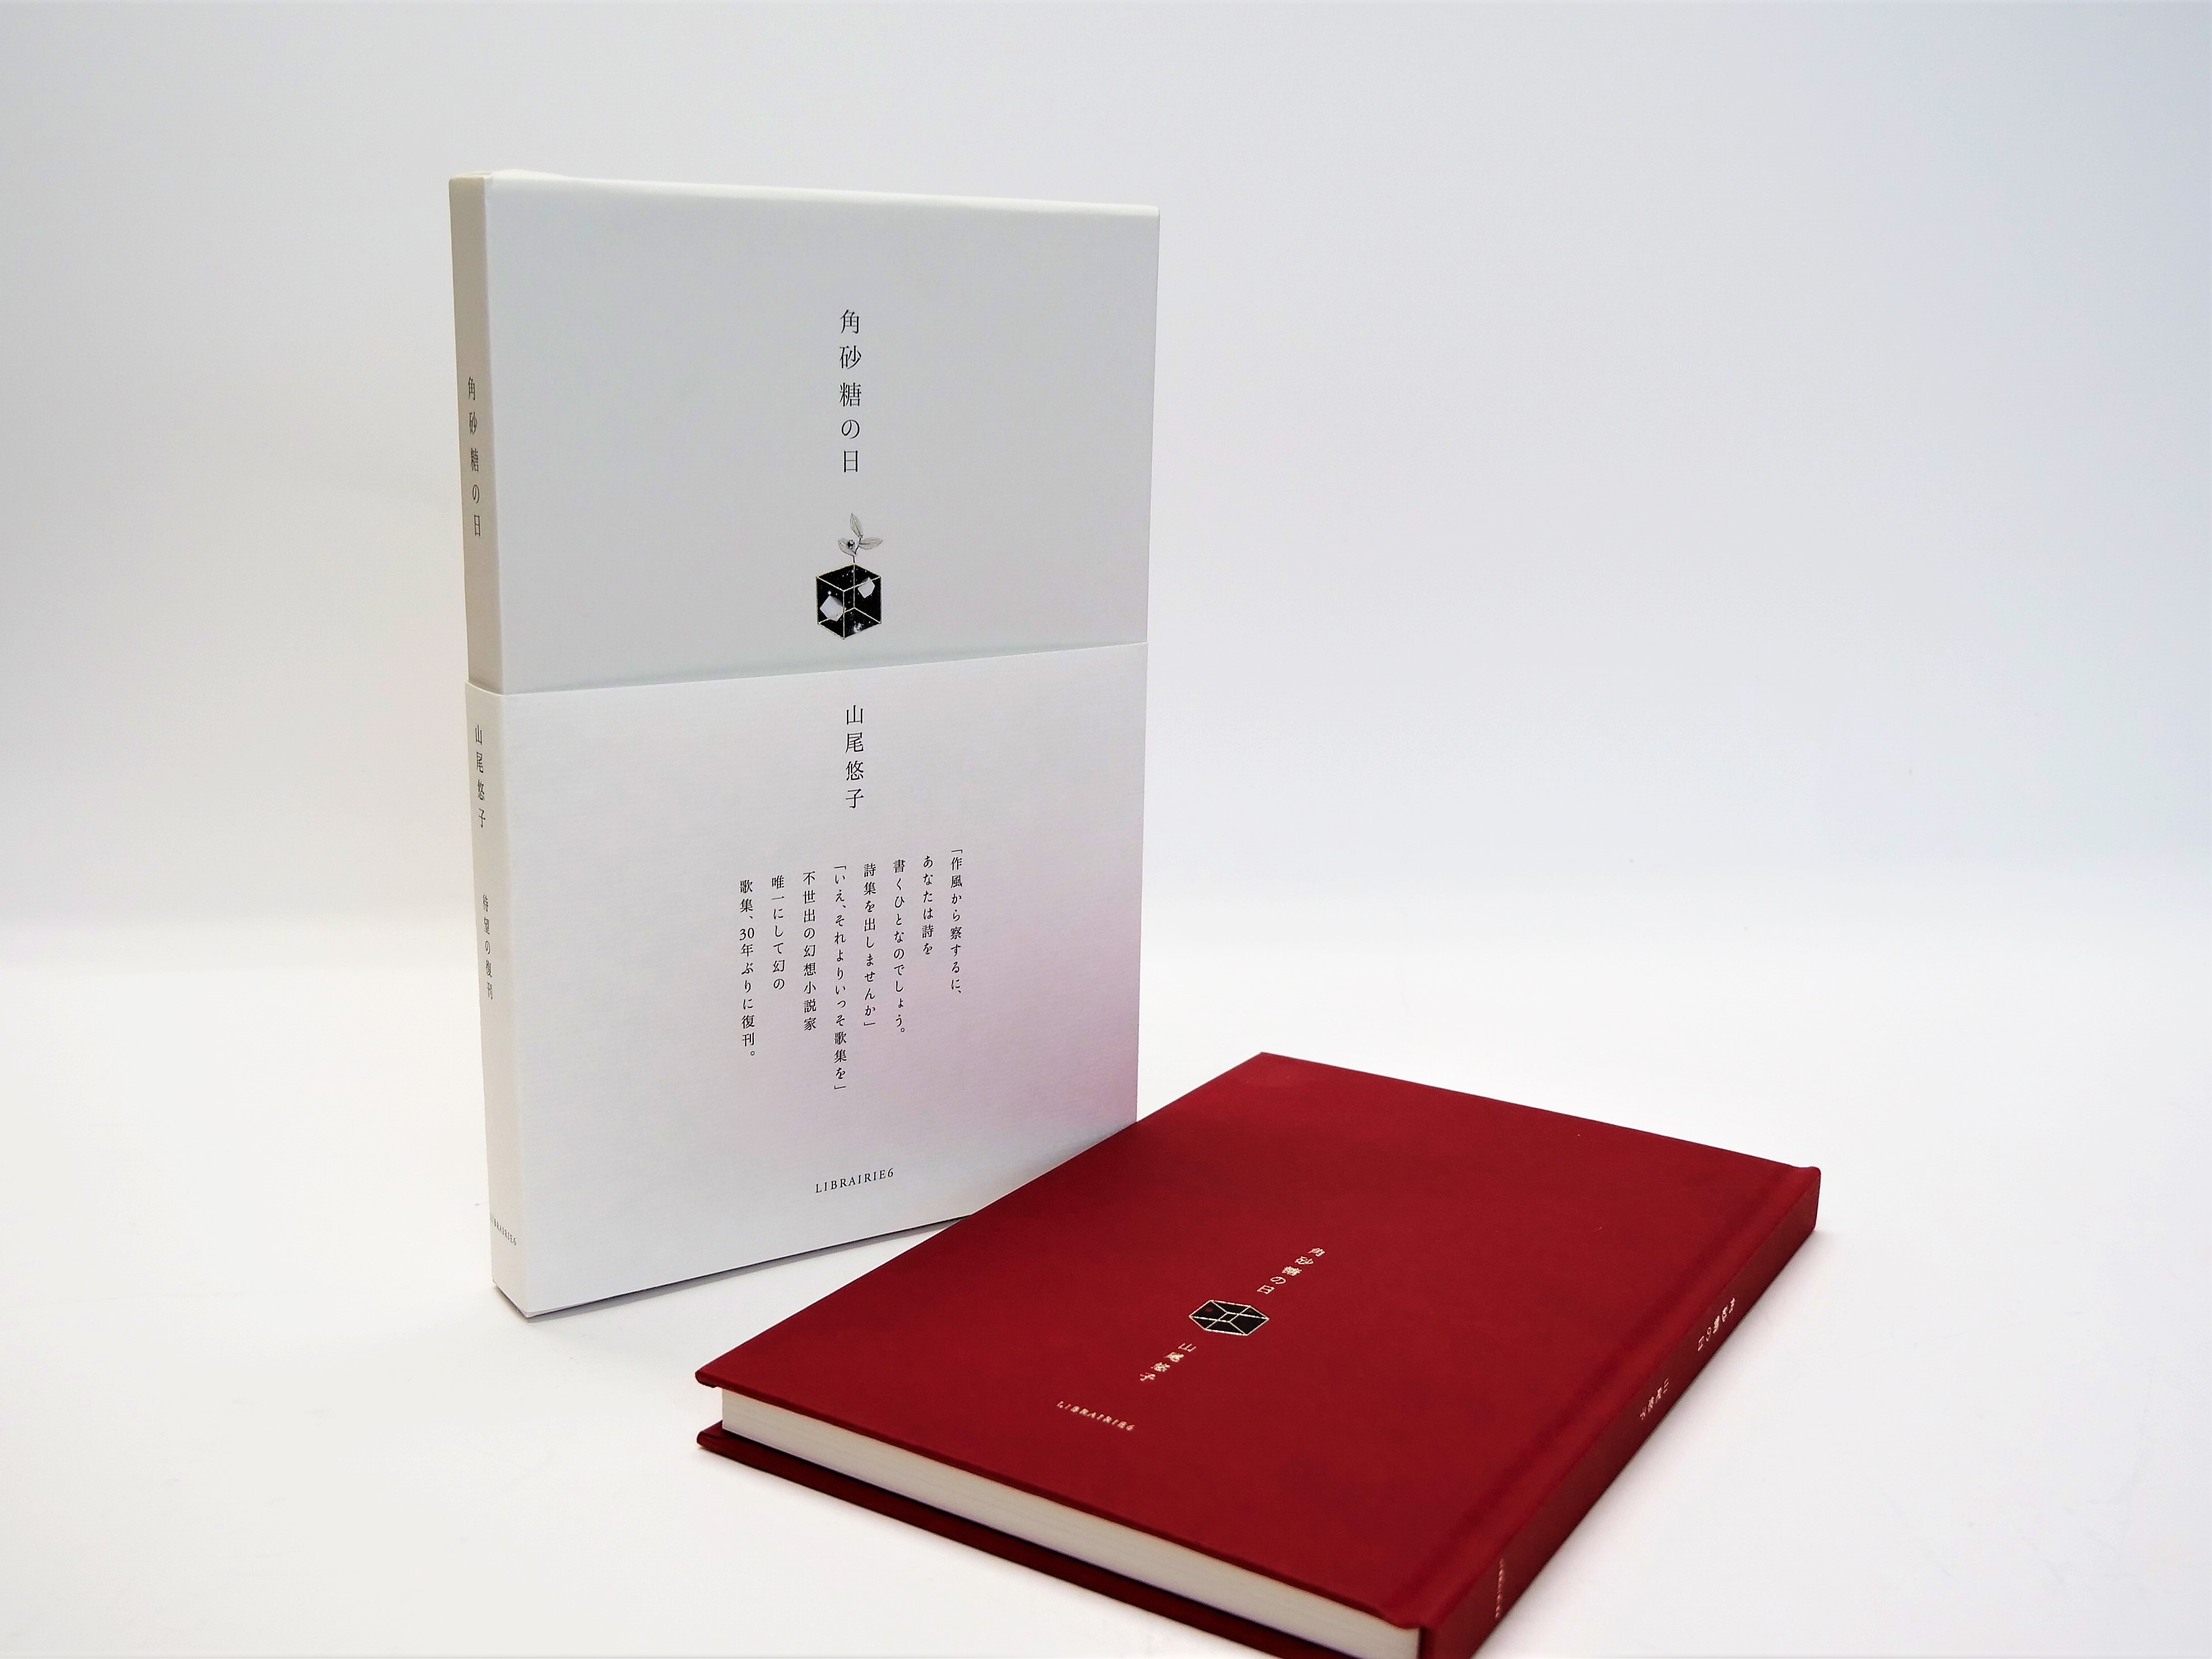 第51回造本装幀コンクール文部科学大臣賞受賞。「幻の作家」山尾悠子の